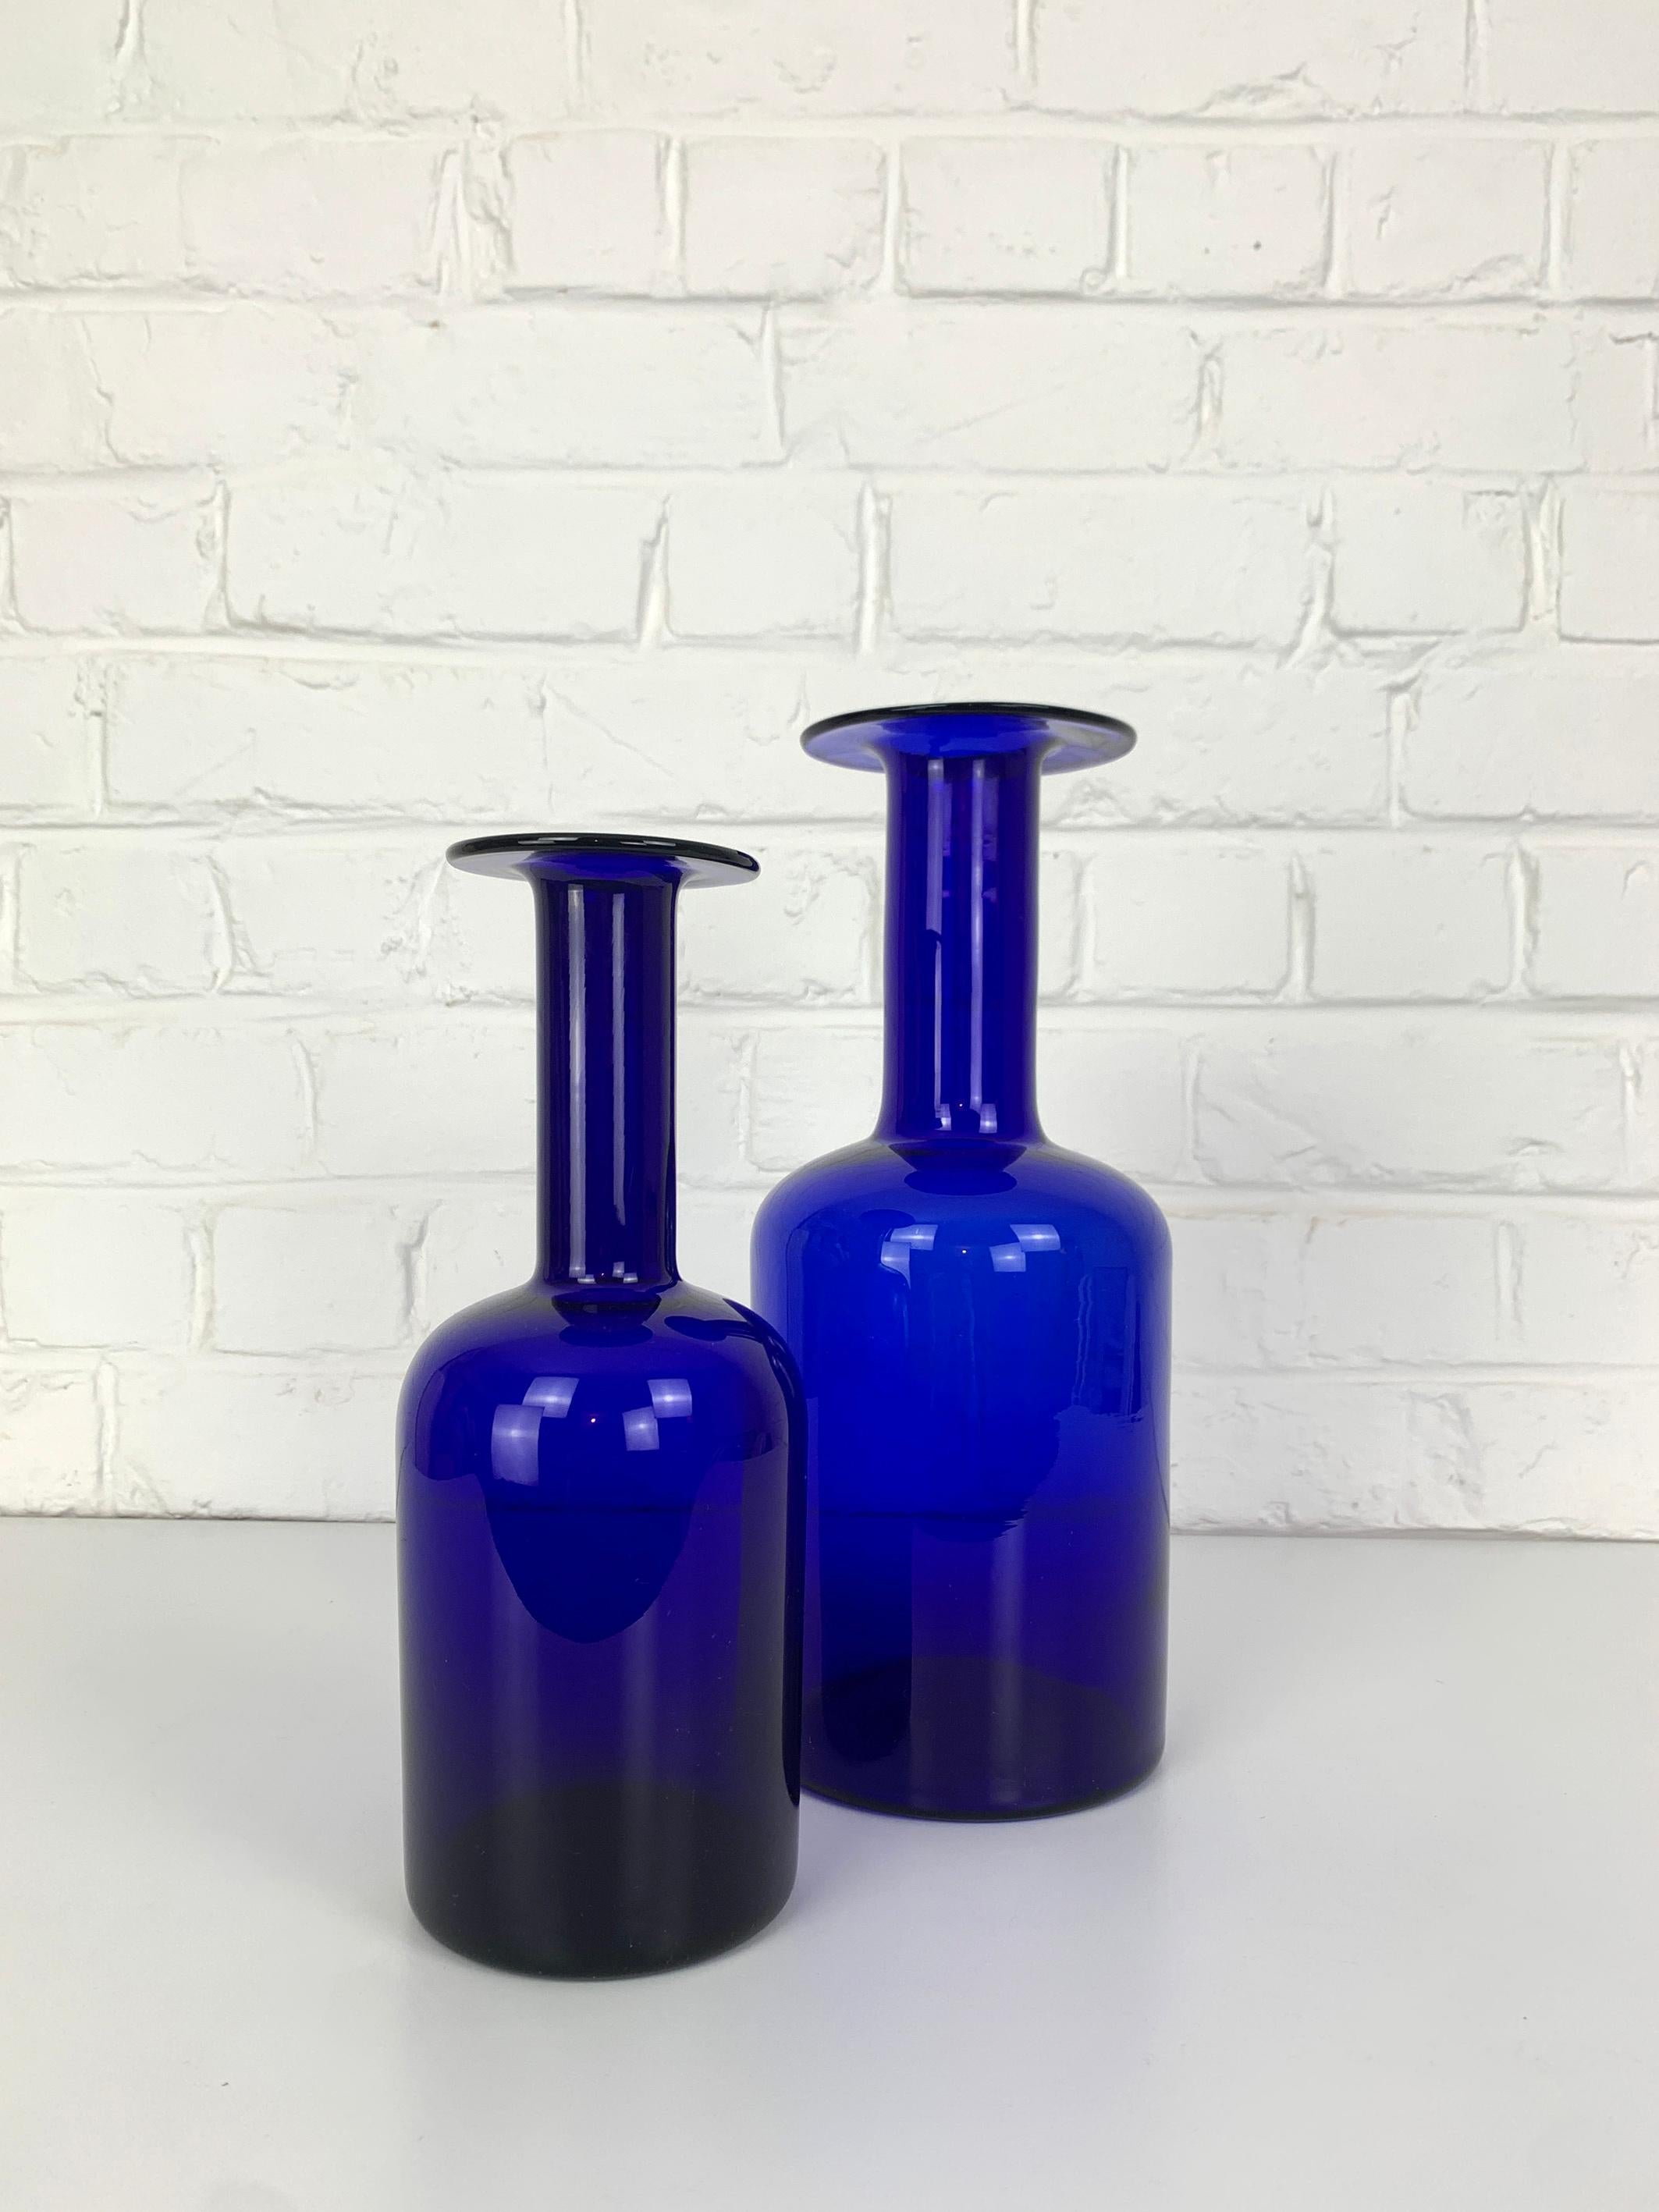 Ensemble de deux vases Gulv d'Otto Brauer, de style Holmegaard du milieu du siècle dernier, en bleu cobalt profond. 

Ces vases-bouteilles typiques de la modernité danoise ont été fabriqués par Kastrup Holmegaard au Danemark dans les années 1950 ou